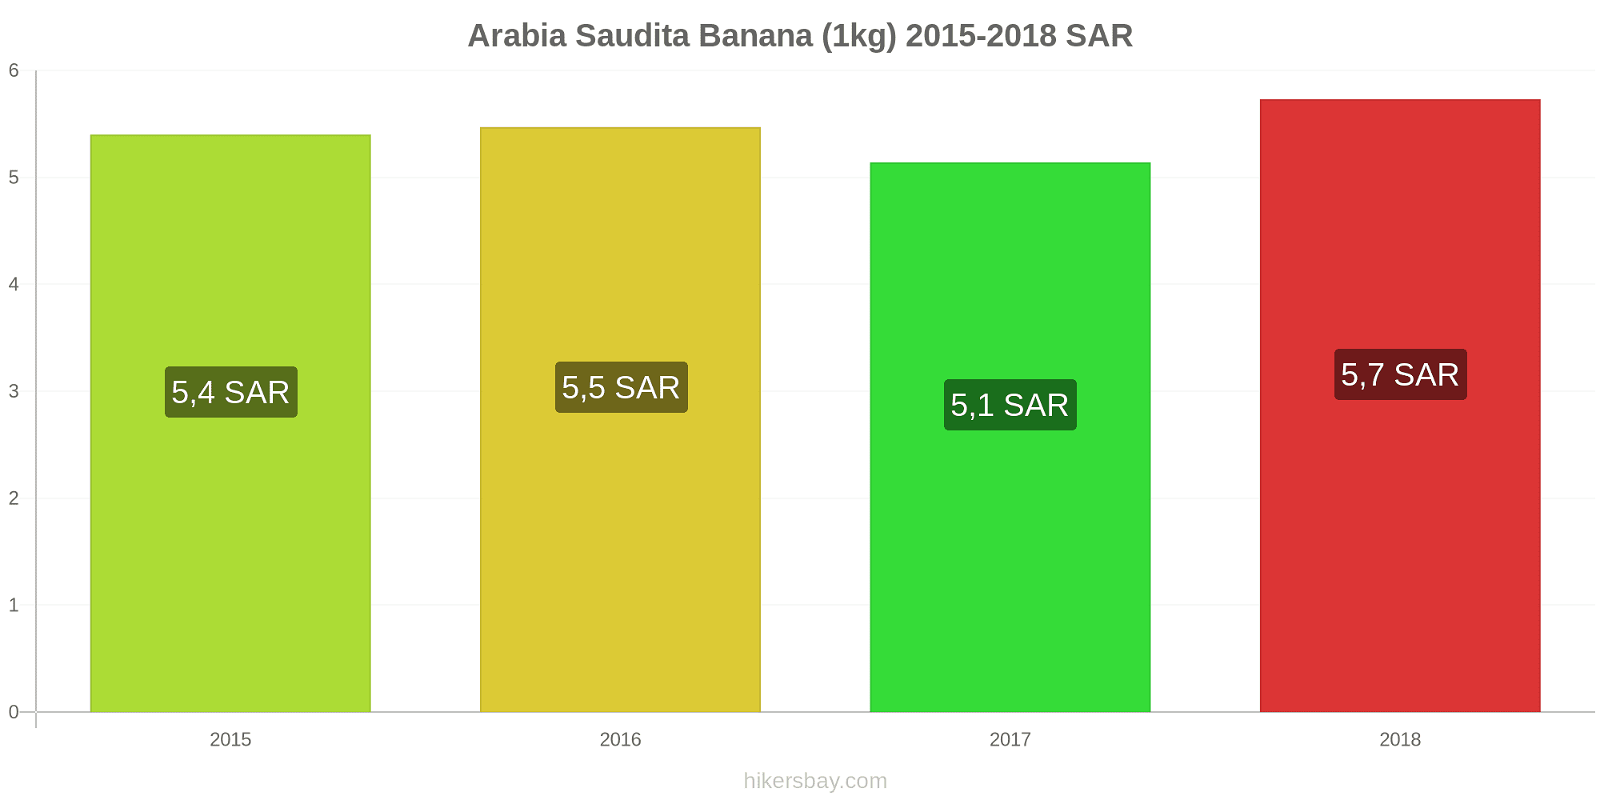 Arabia Saudita cambi di prezzo Banane (1kg) hikersbay.com